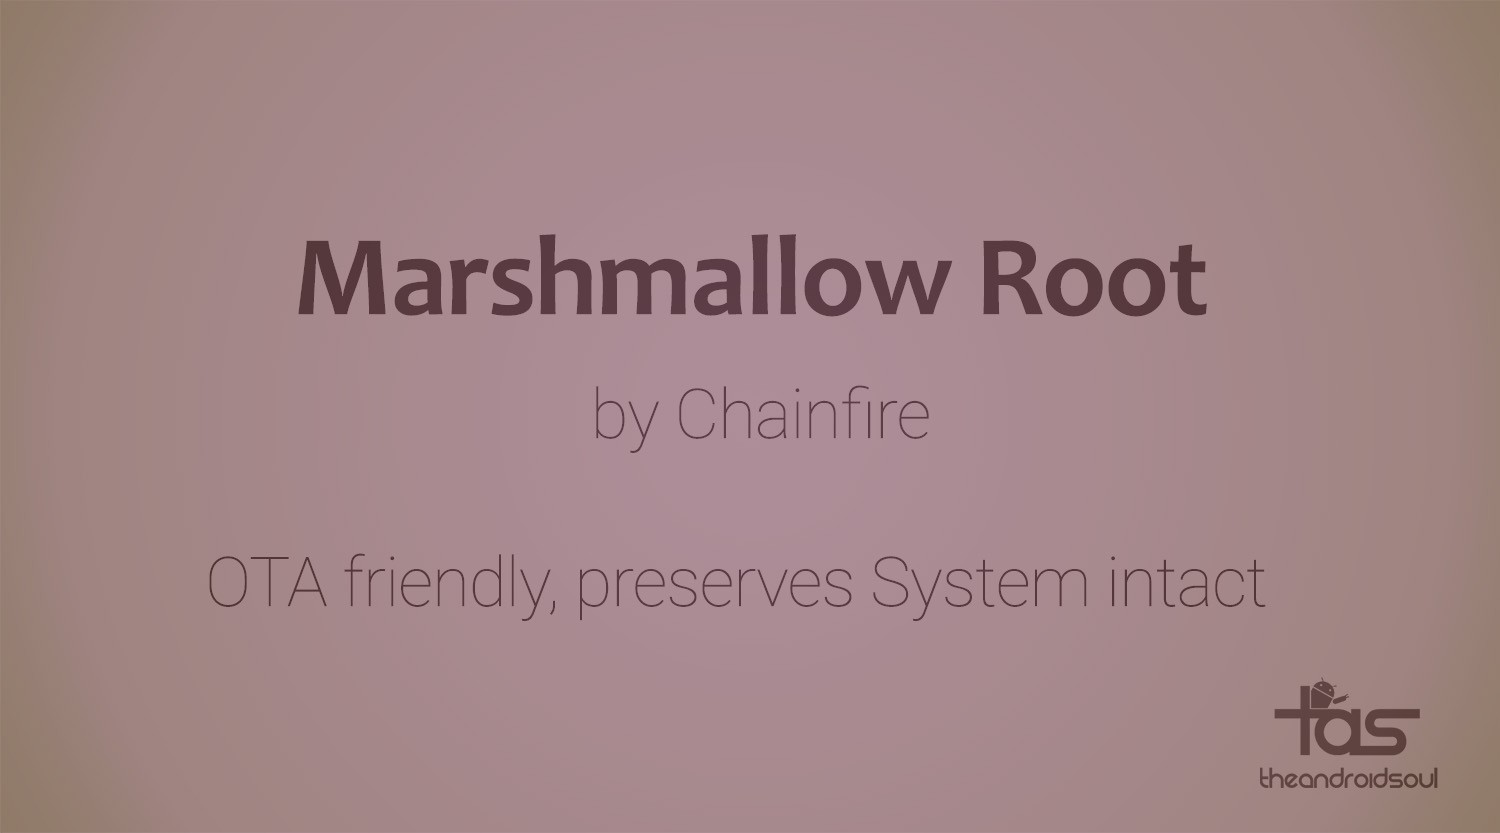 El nuevo Marshmallow Root para Nexus 5, 5X, 6, 6P, 9 y 7 (2013) es compatible con OTA, mantiene el sistema intacto